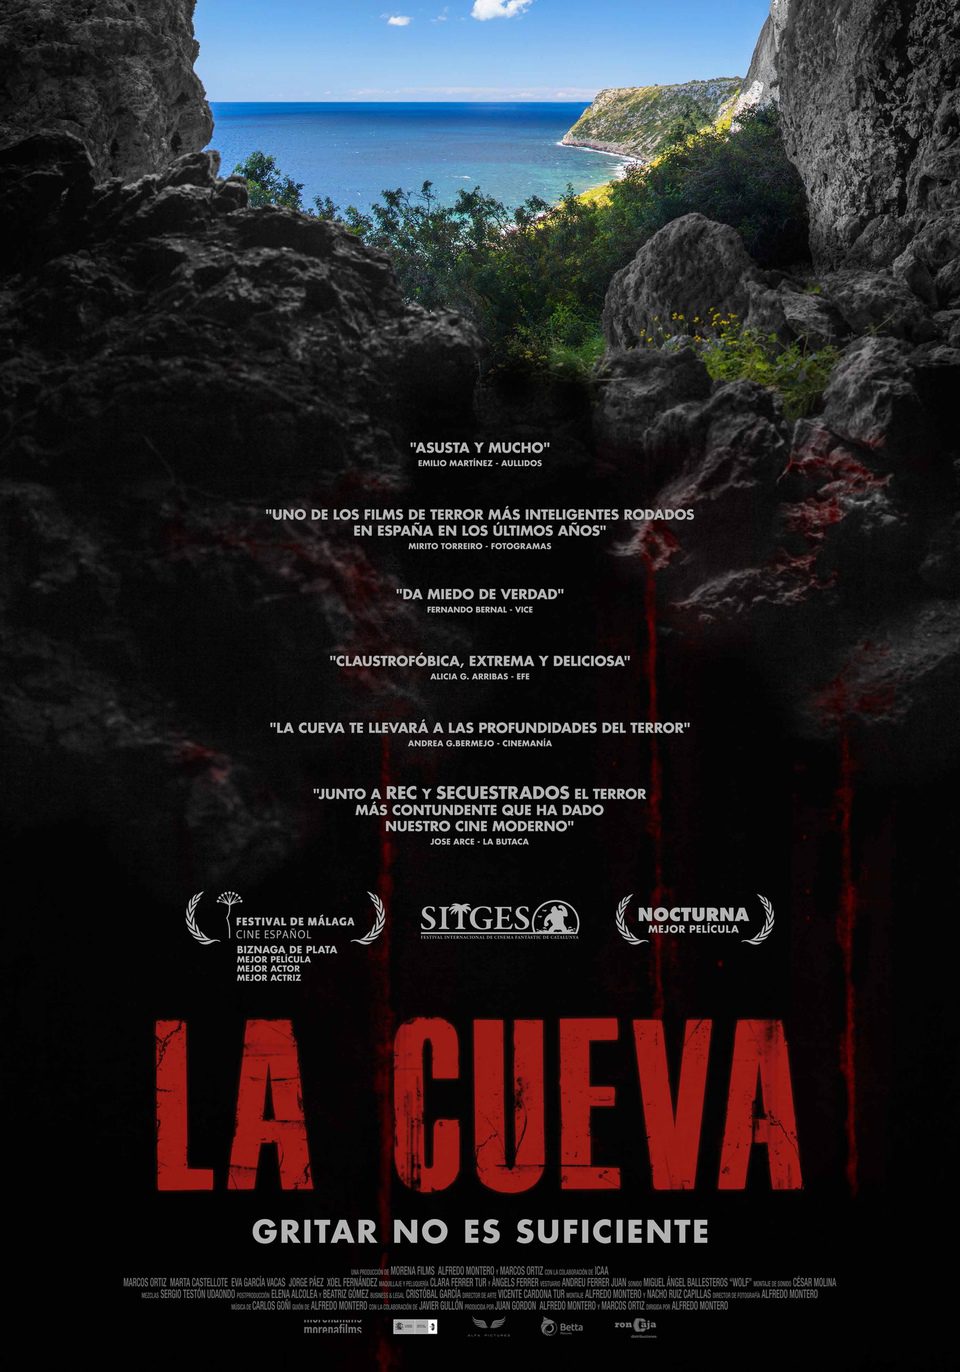 Poster of La cueva - España 2